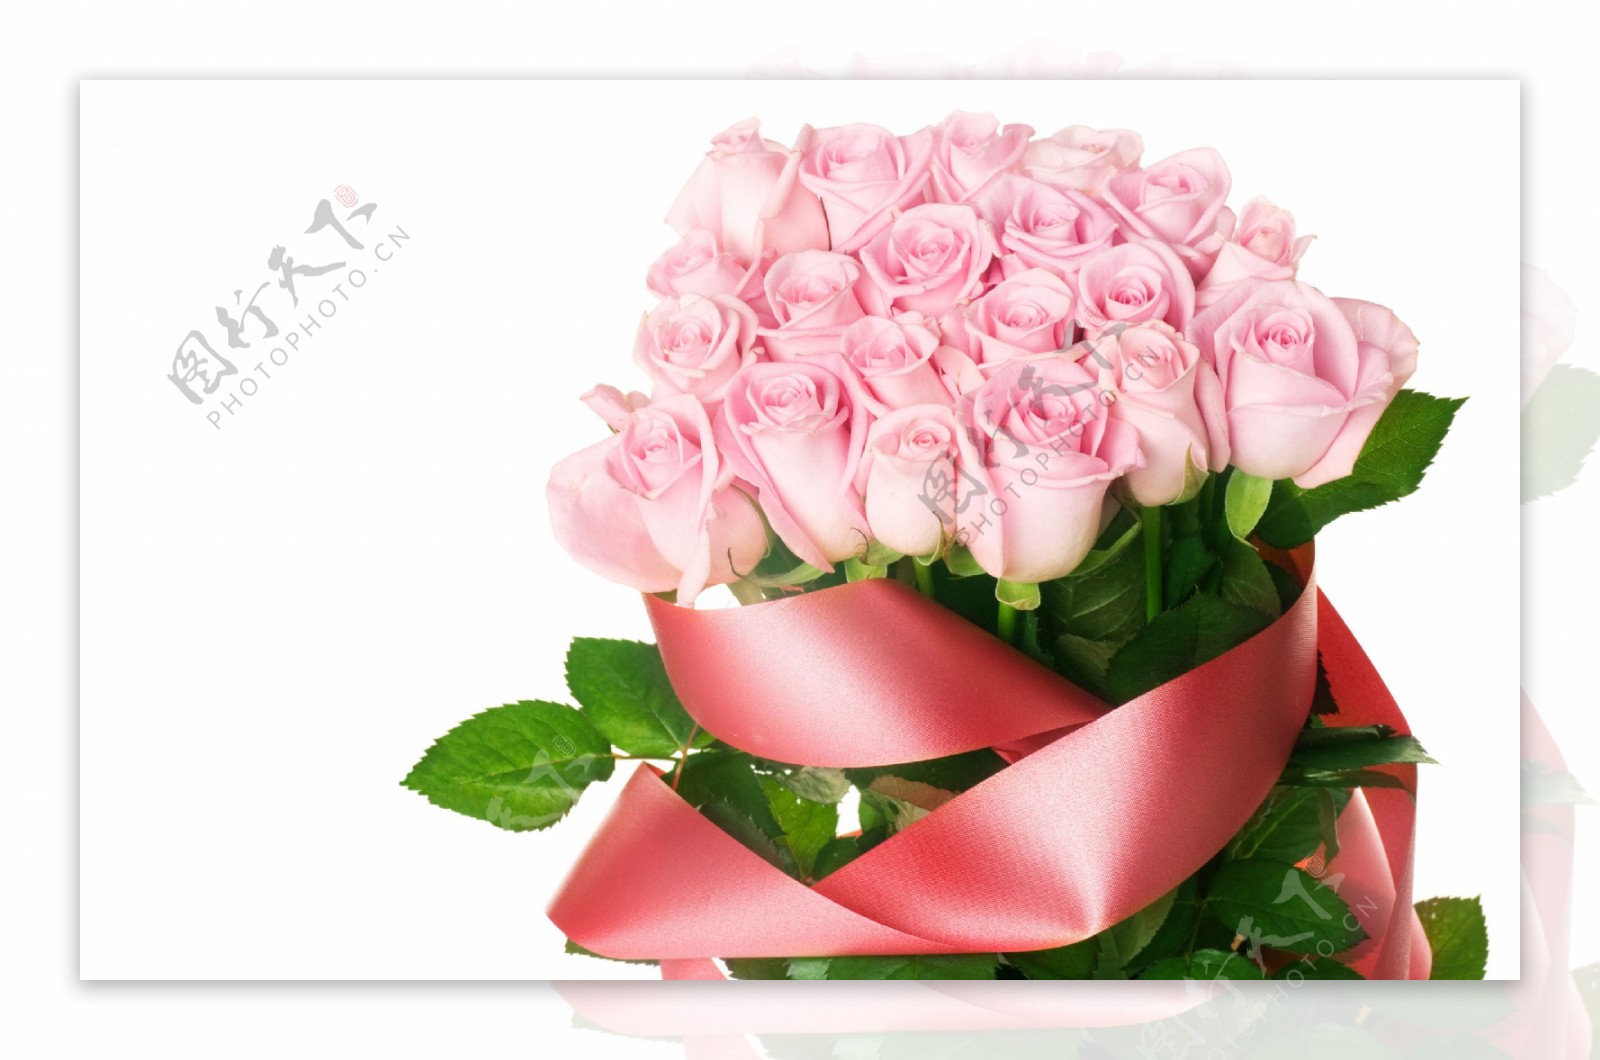 鲜艳粉色玫瑰花束图片